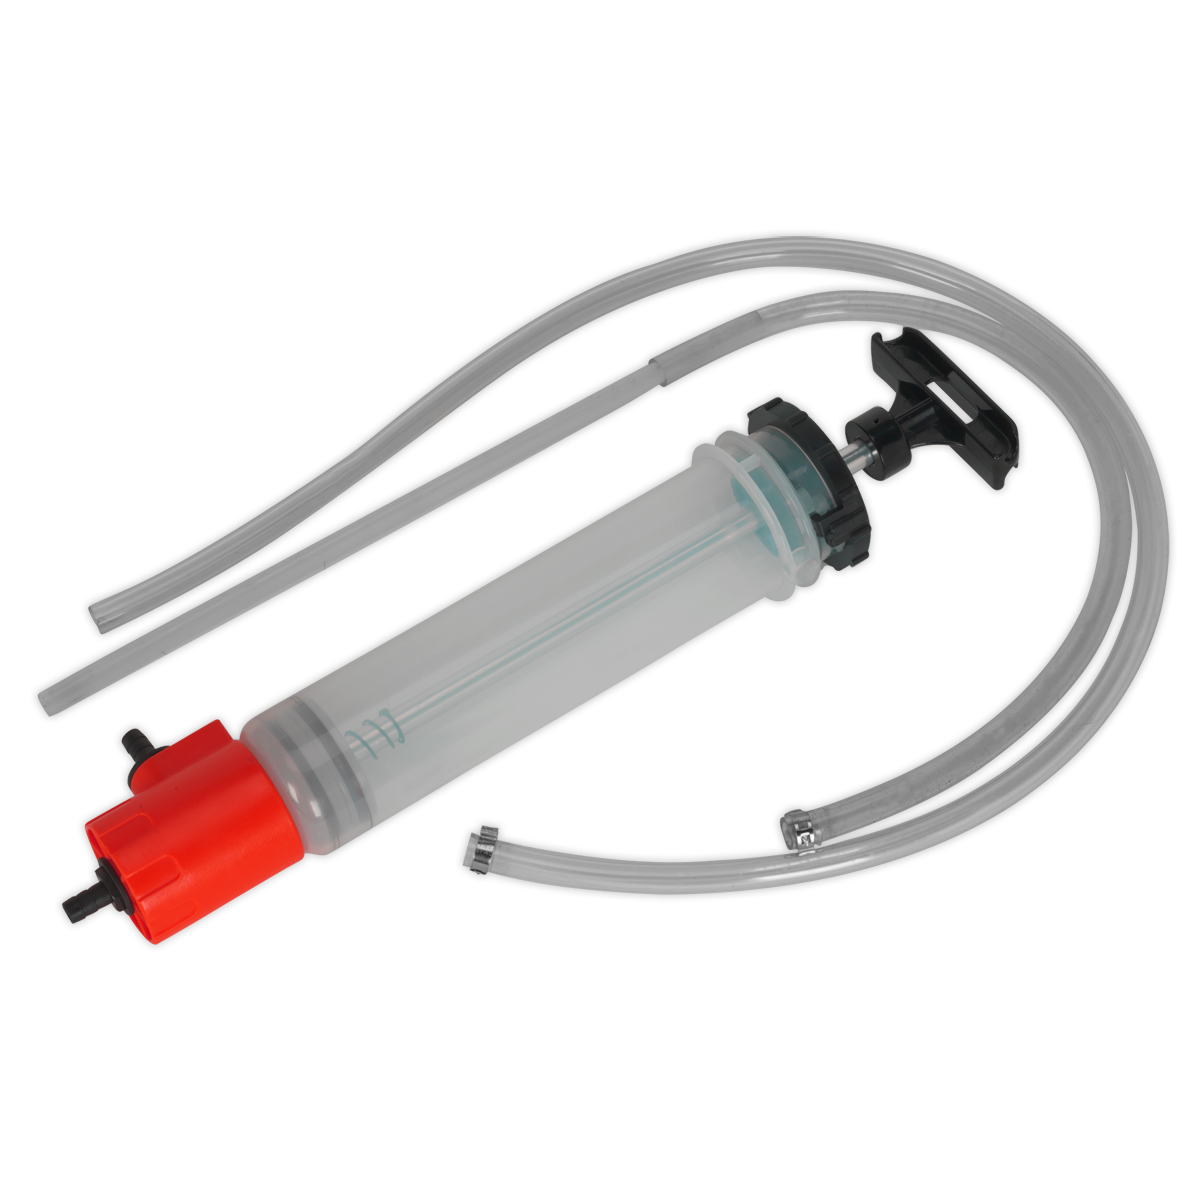 Fluid Transfer/Inspection Syringe 550ml